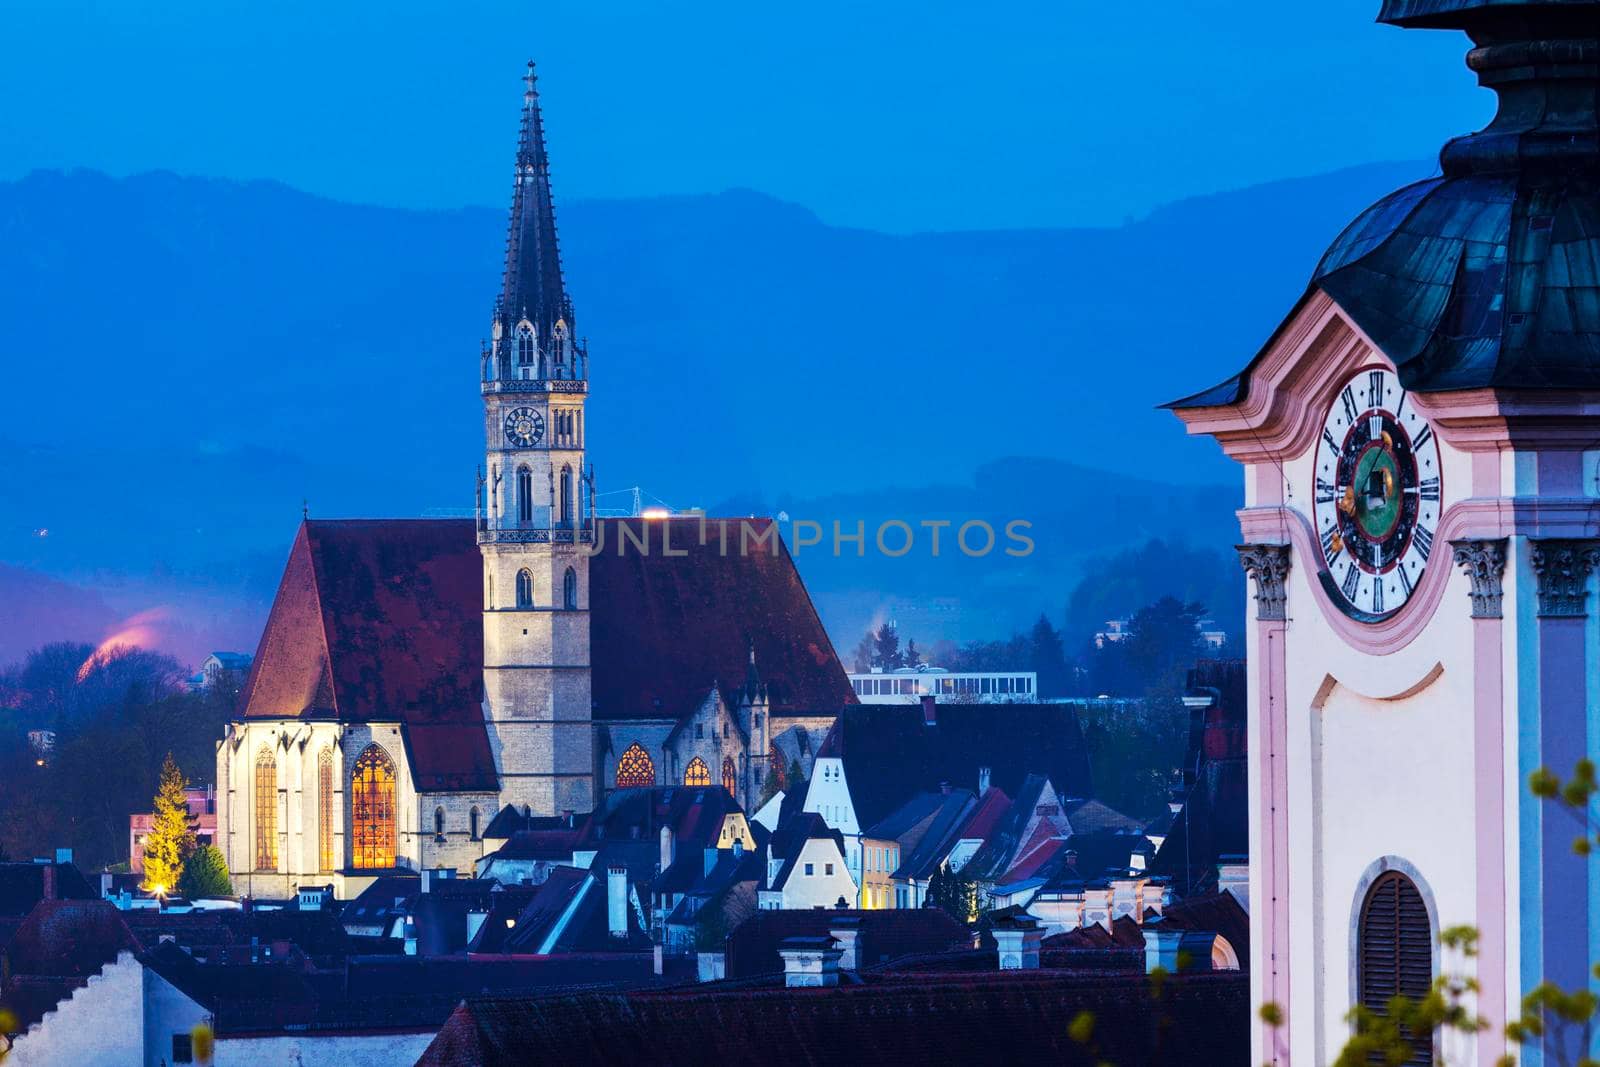 Stadtpfarrkirche in Steyr. Steyr, Upper Austria, Austria..